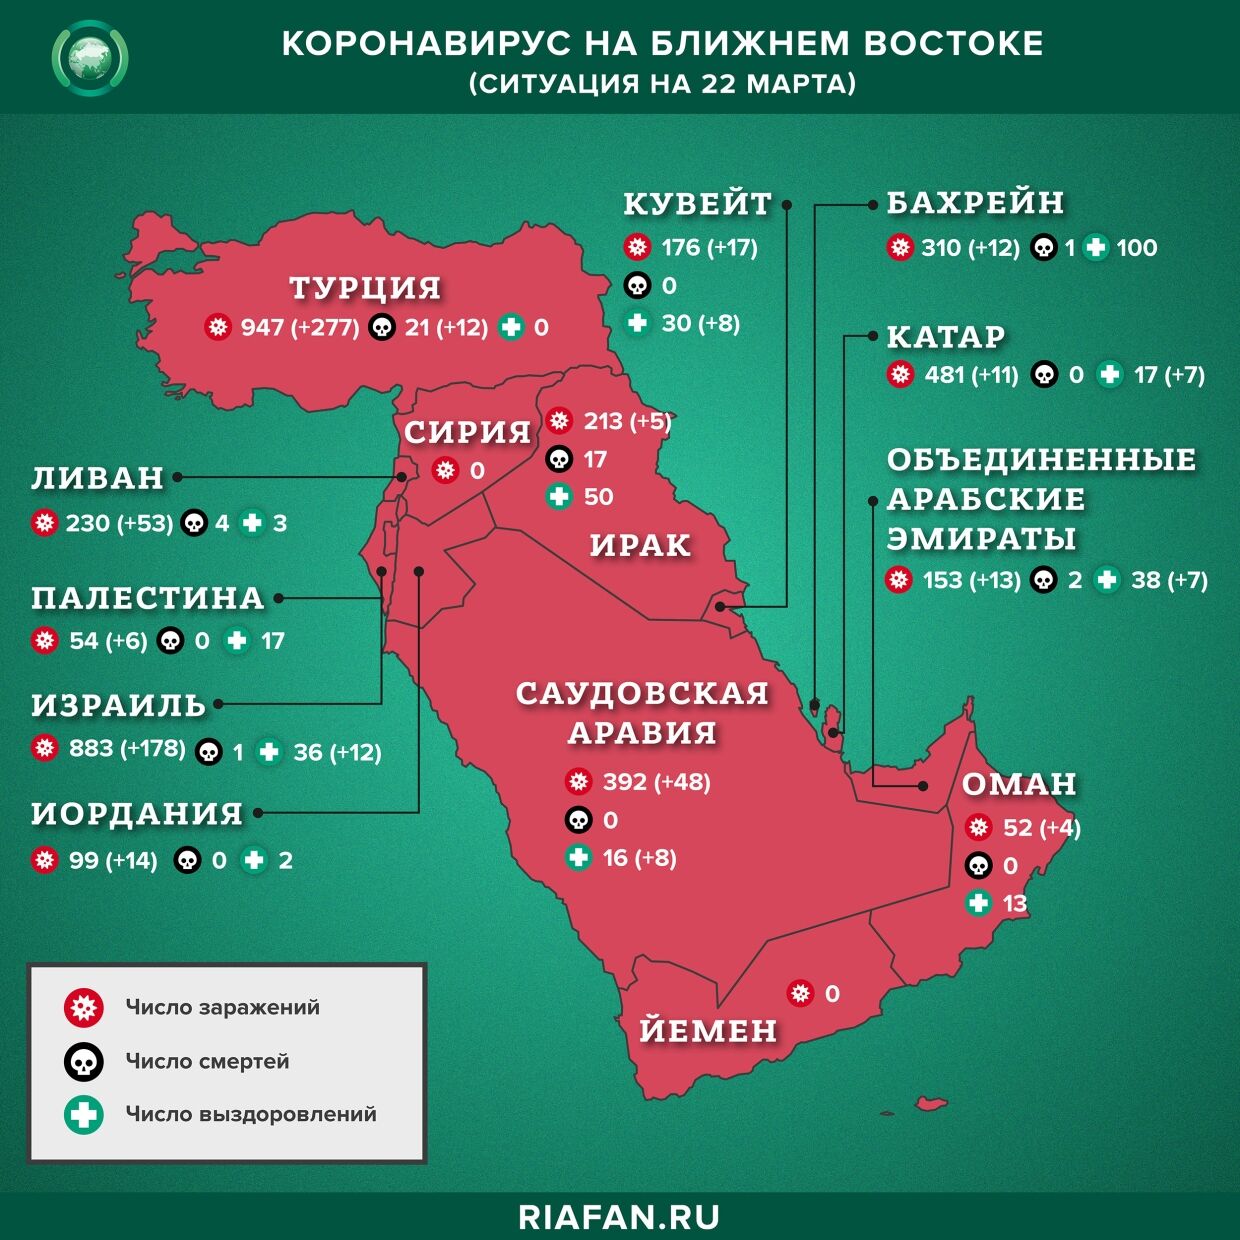 Коронавирус в арабском мире: суточная сводка по состоянию на 10.00 22 марта 2020 года